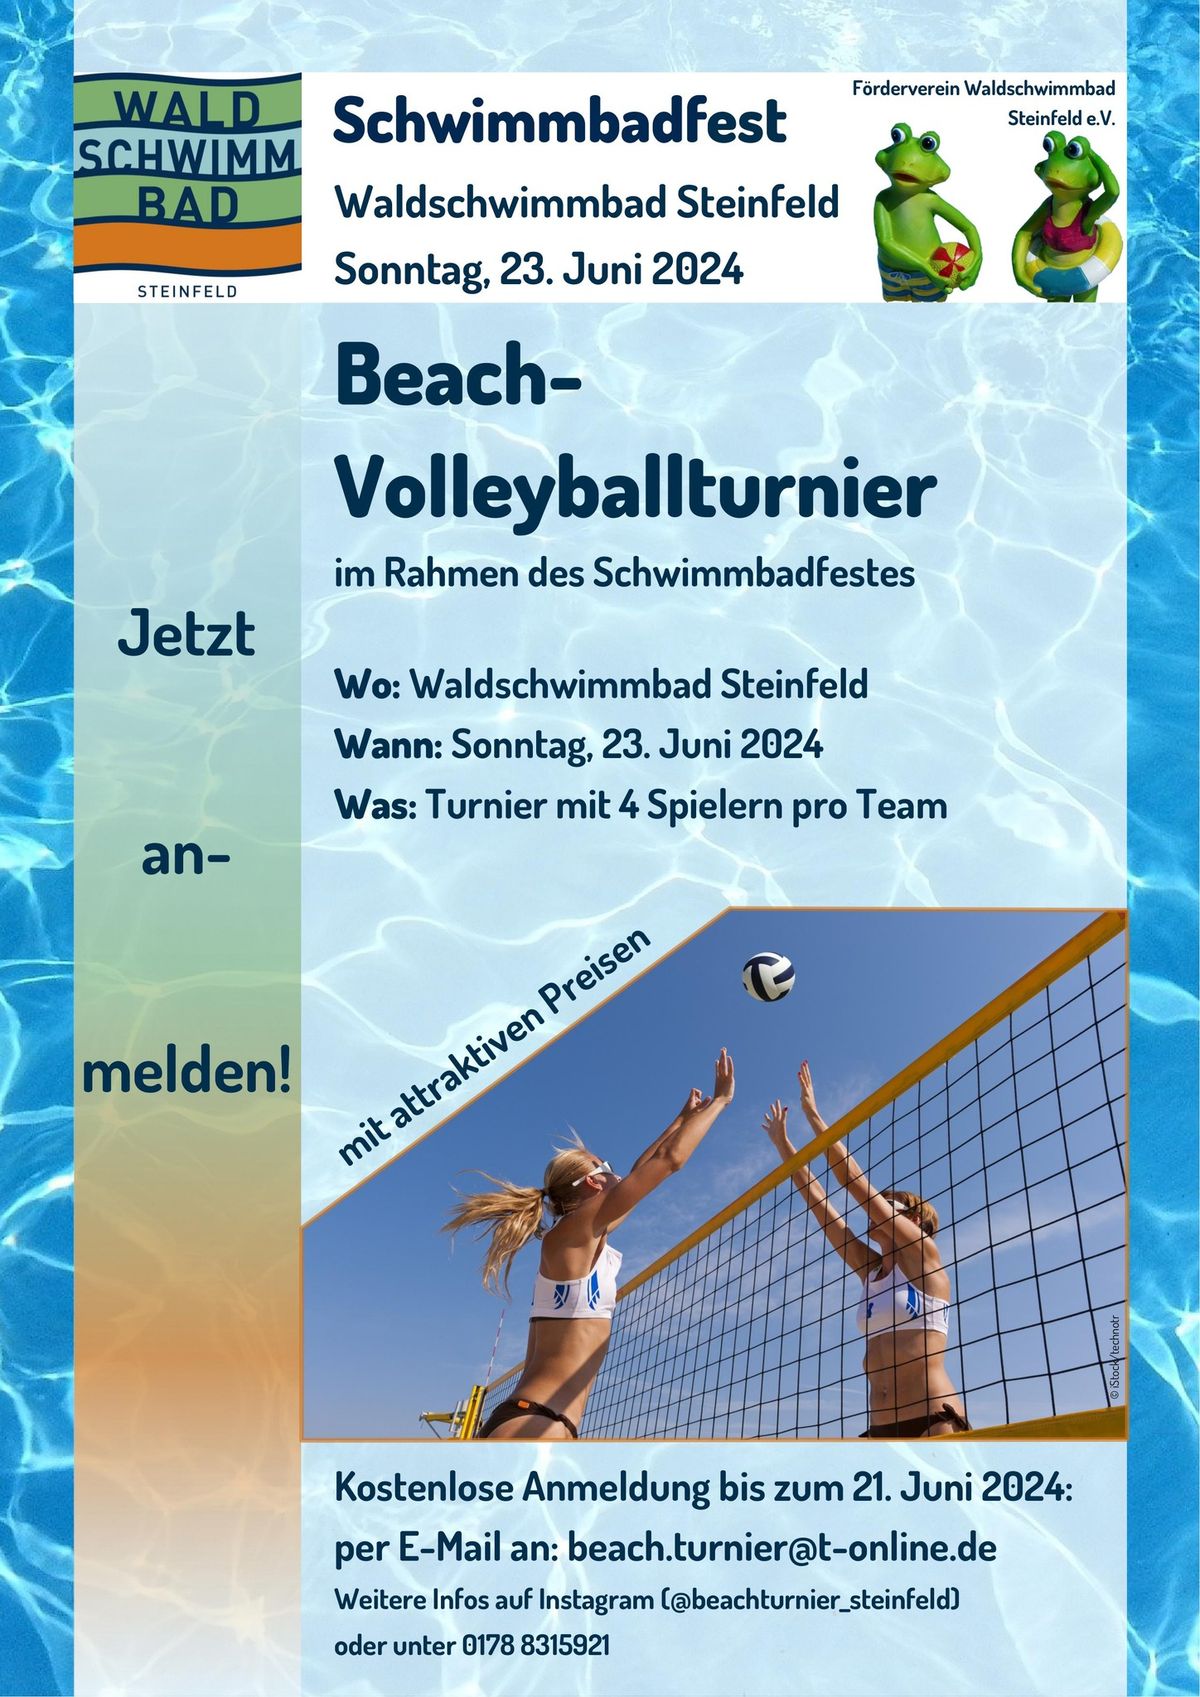 Beach- Volleyballturnier im Rahmen des Schwimmbadfestes